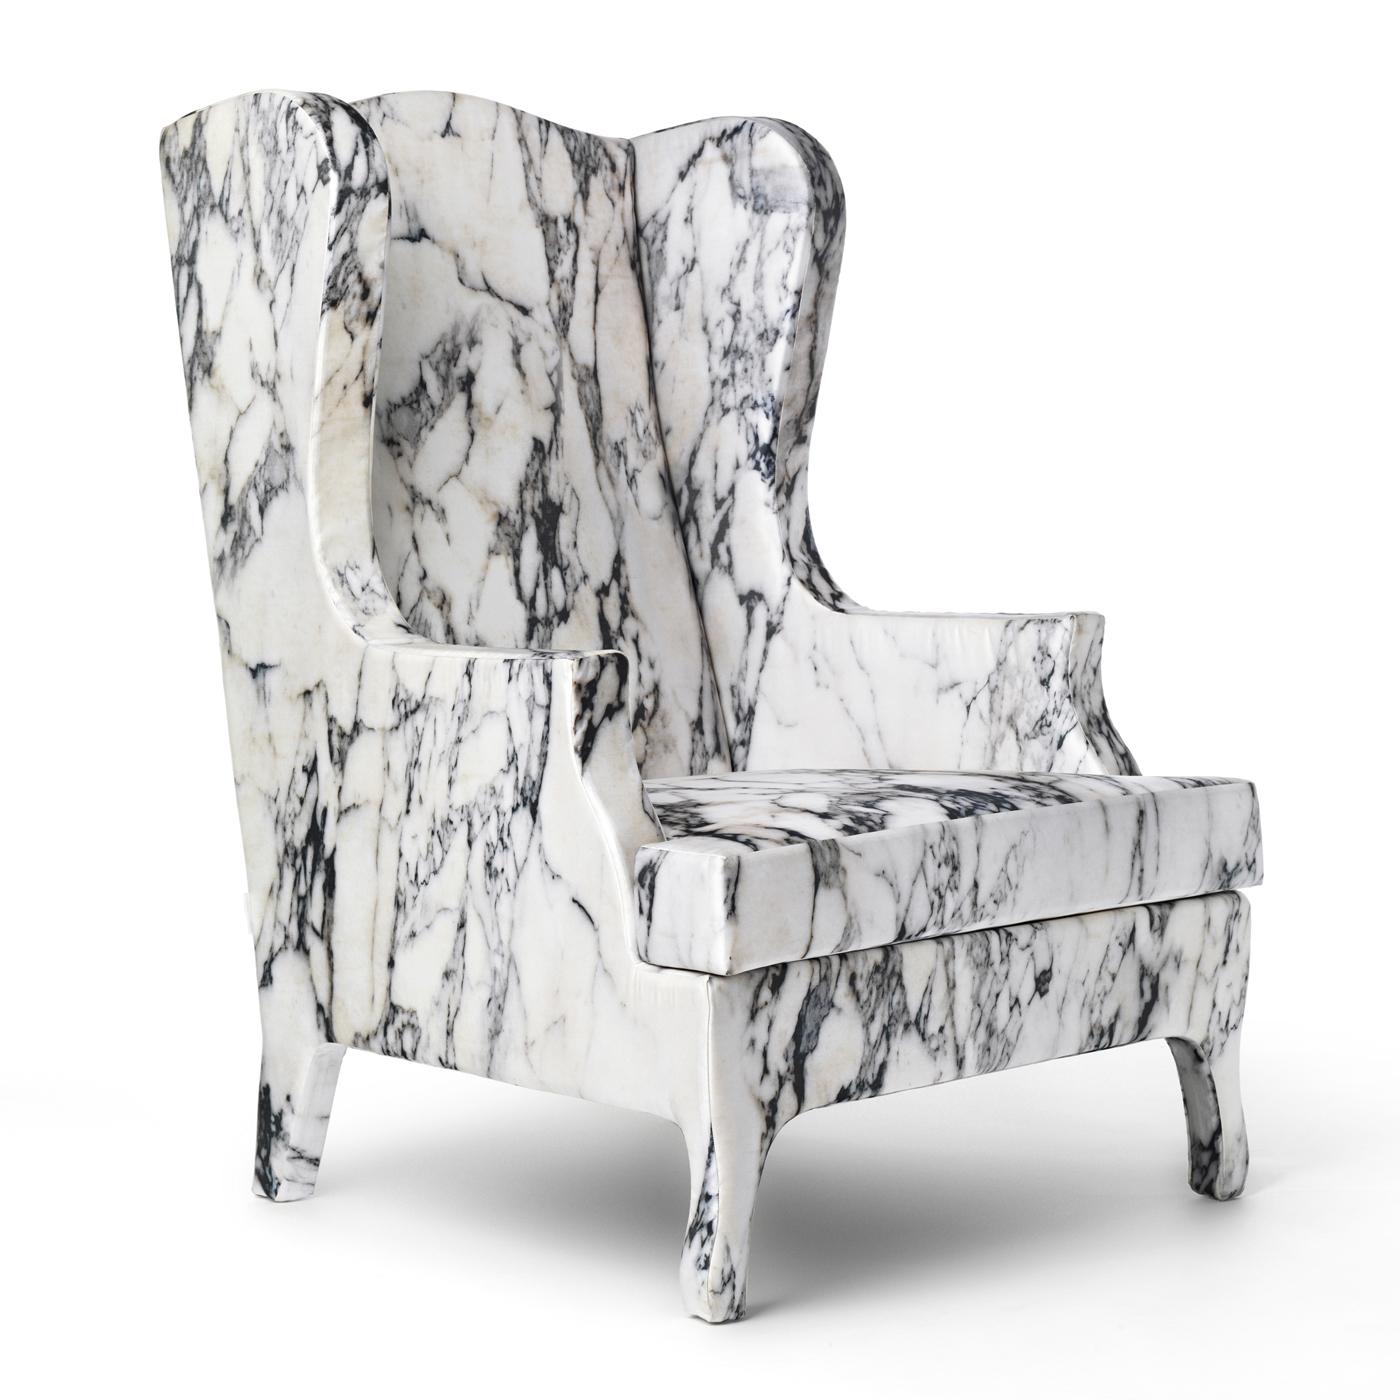 Le classique rencontre le moderne dans ce superbe fauteuil conçu par Maurizio Galante et Tal Lancman de la Louis XV Goes To Sparte Collectional qui combine la forme sinueuse du fauteuil à oreilles avec un matériau et un motif ultra-modernes. Le